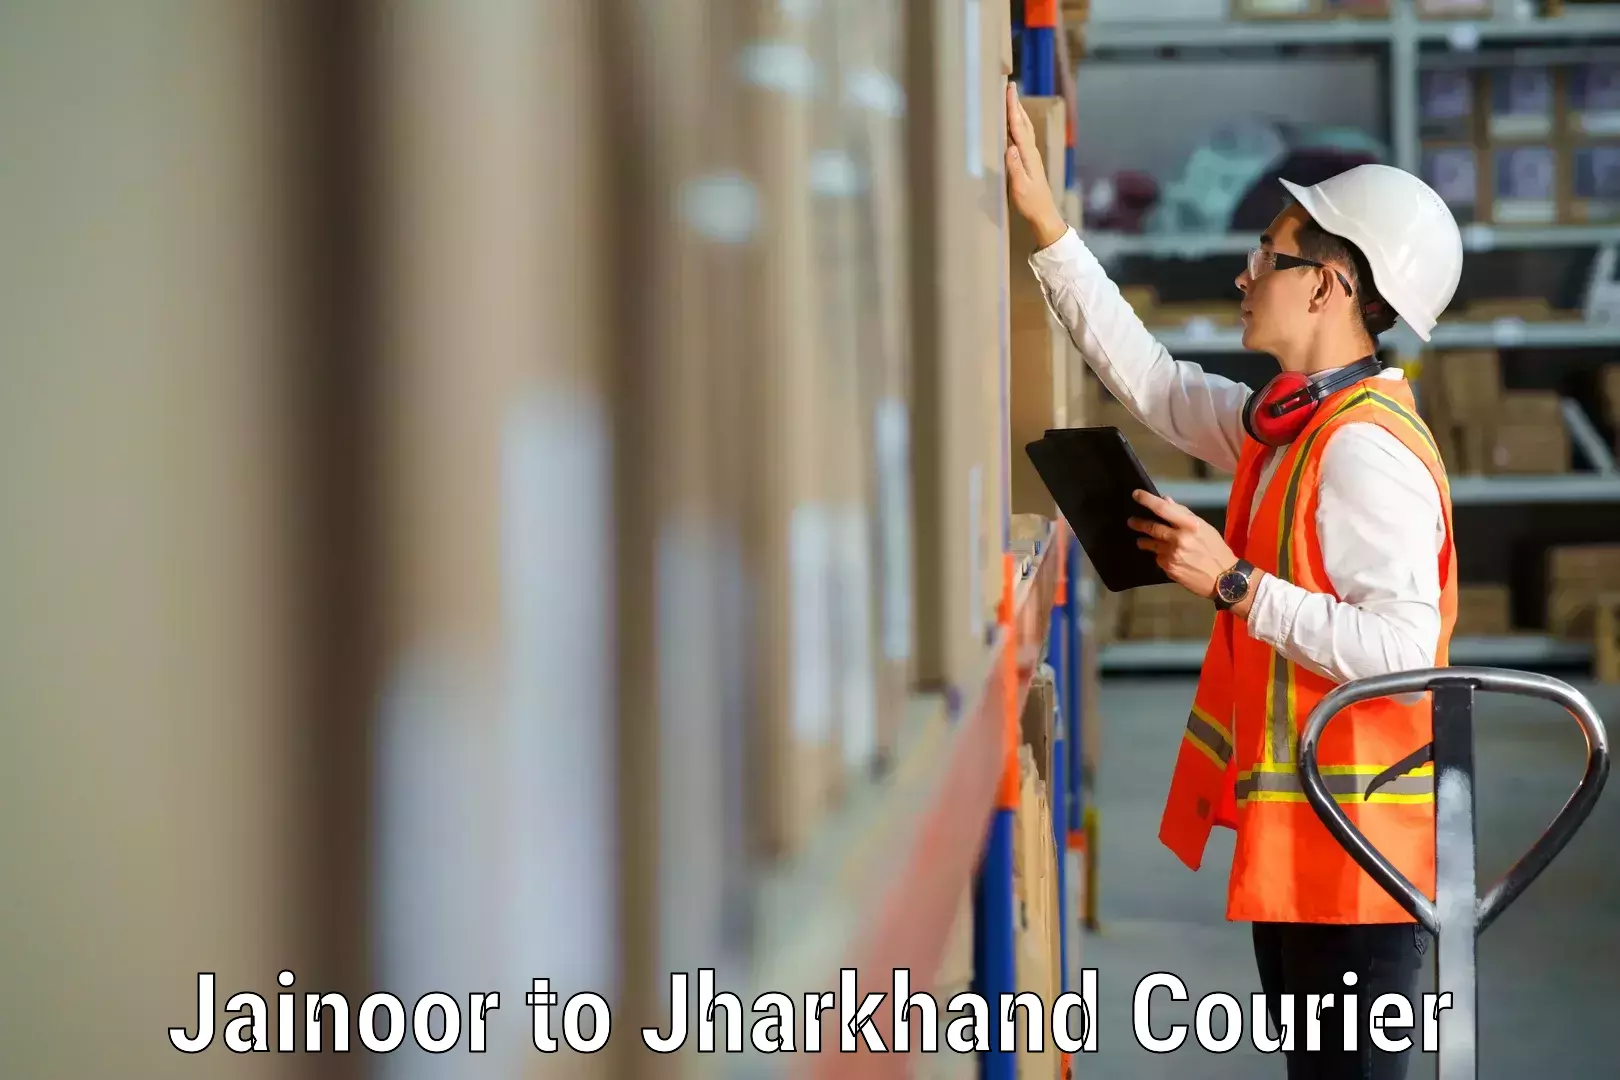 Furniture transport and storage Jainoor to Jharkhand